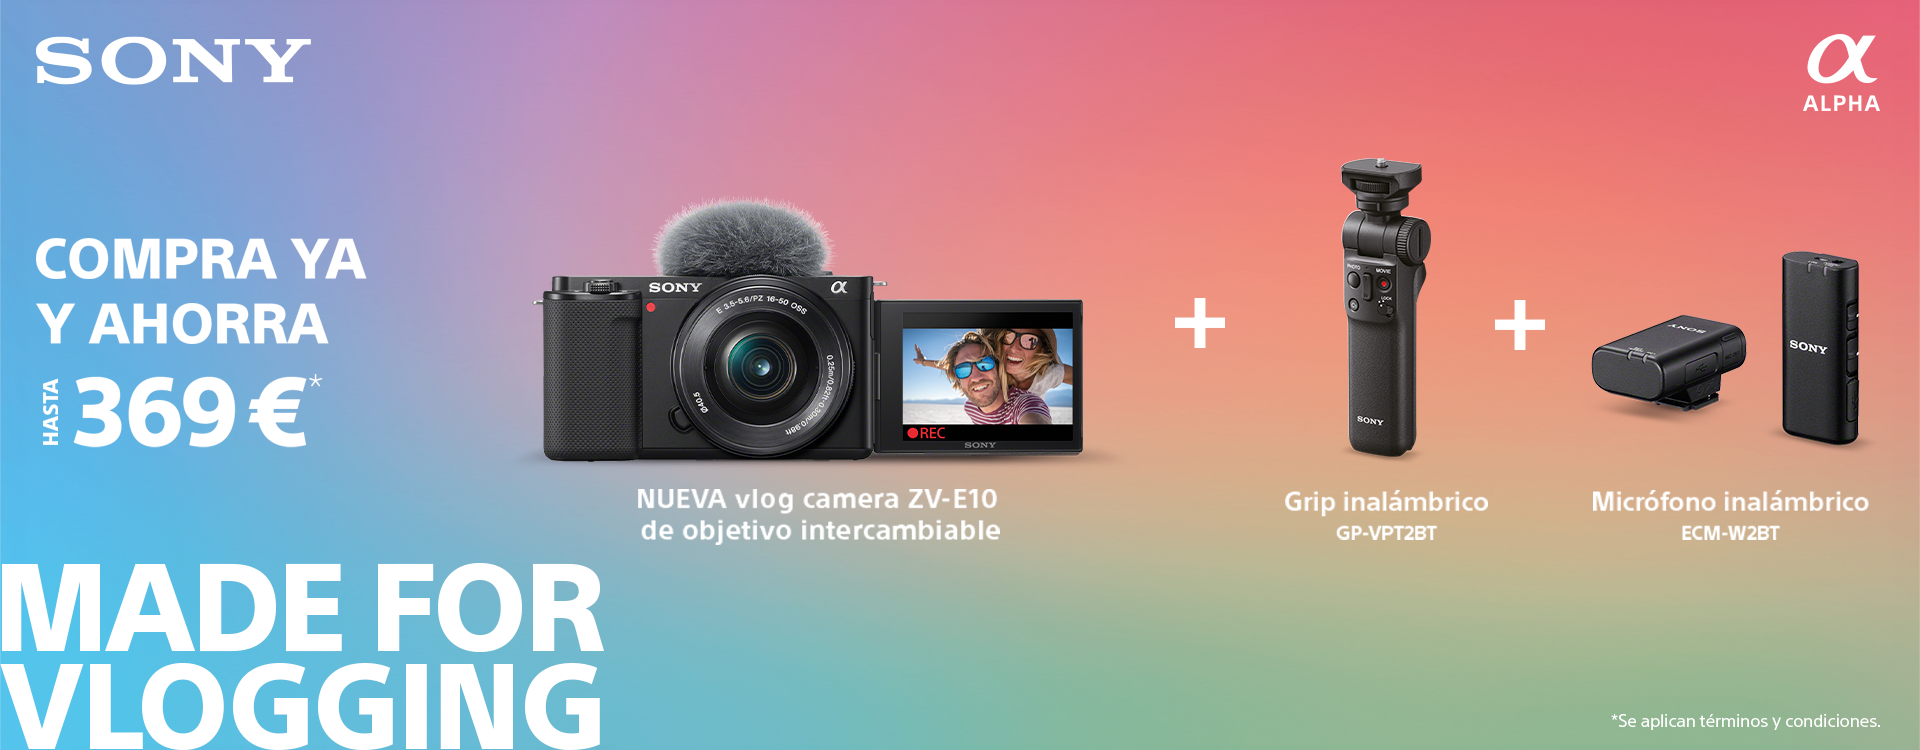 Llega la nueva cámara para videoblogs con objetivo intercambiable SONY ZV E10